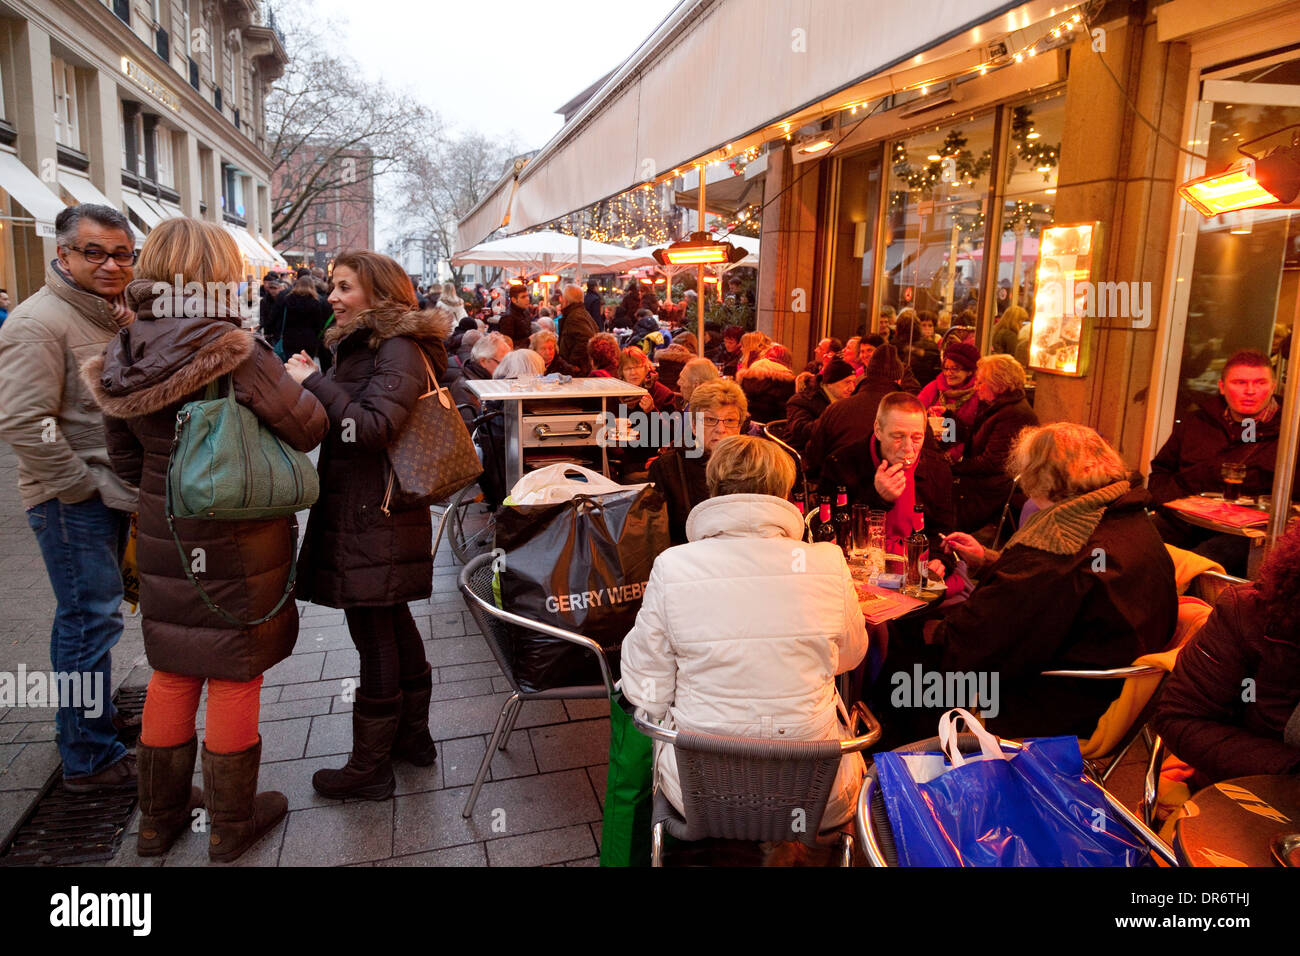 Gente sentada comiendo y bebiendo en un café de la calle, Colonia (Köln), Alemania Europa Foto de stock